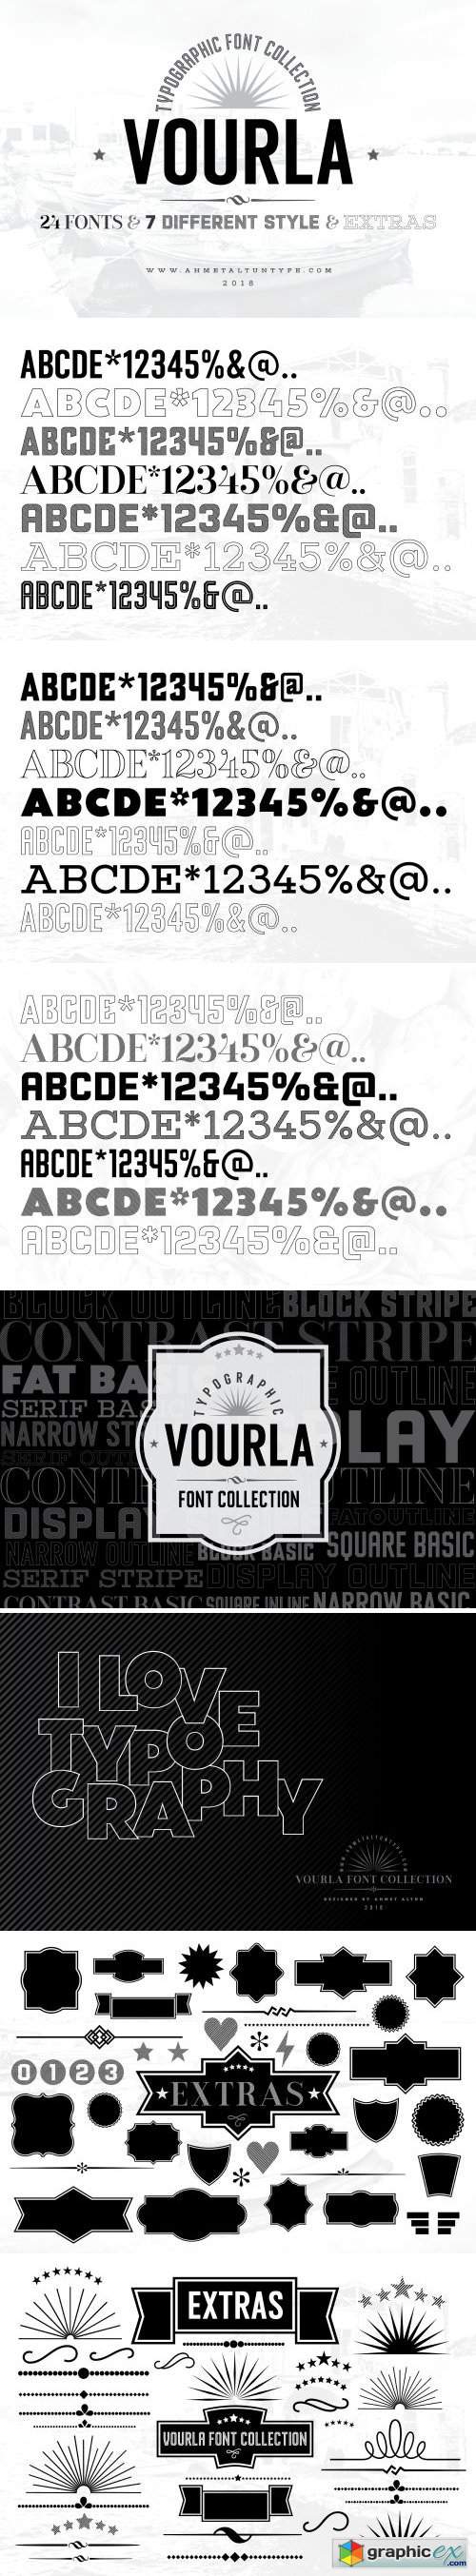 Vourla Font Collection